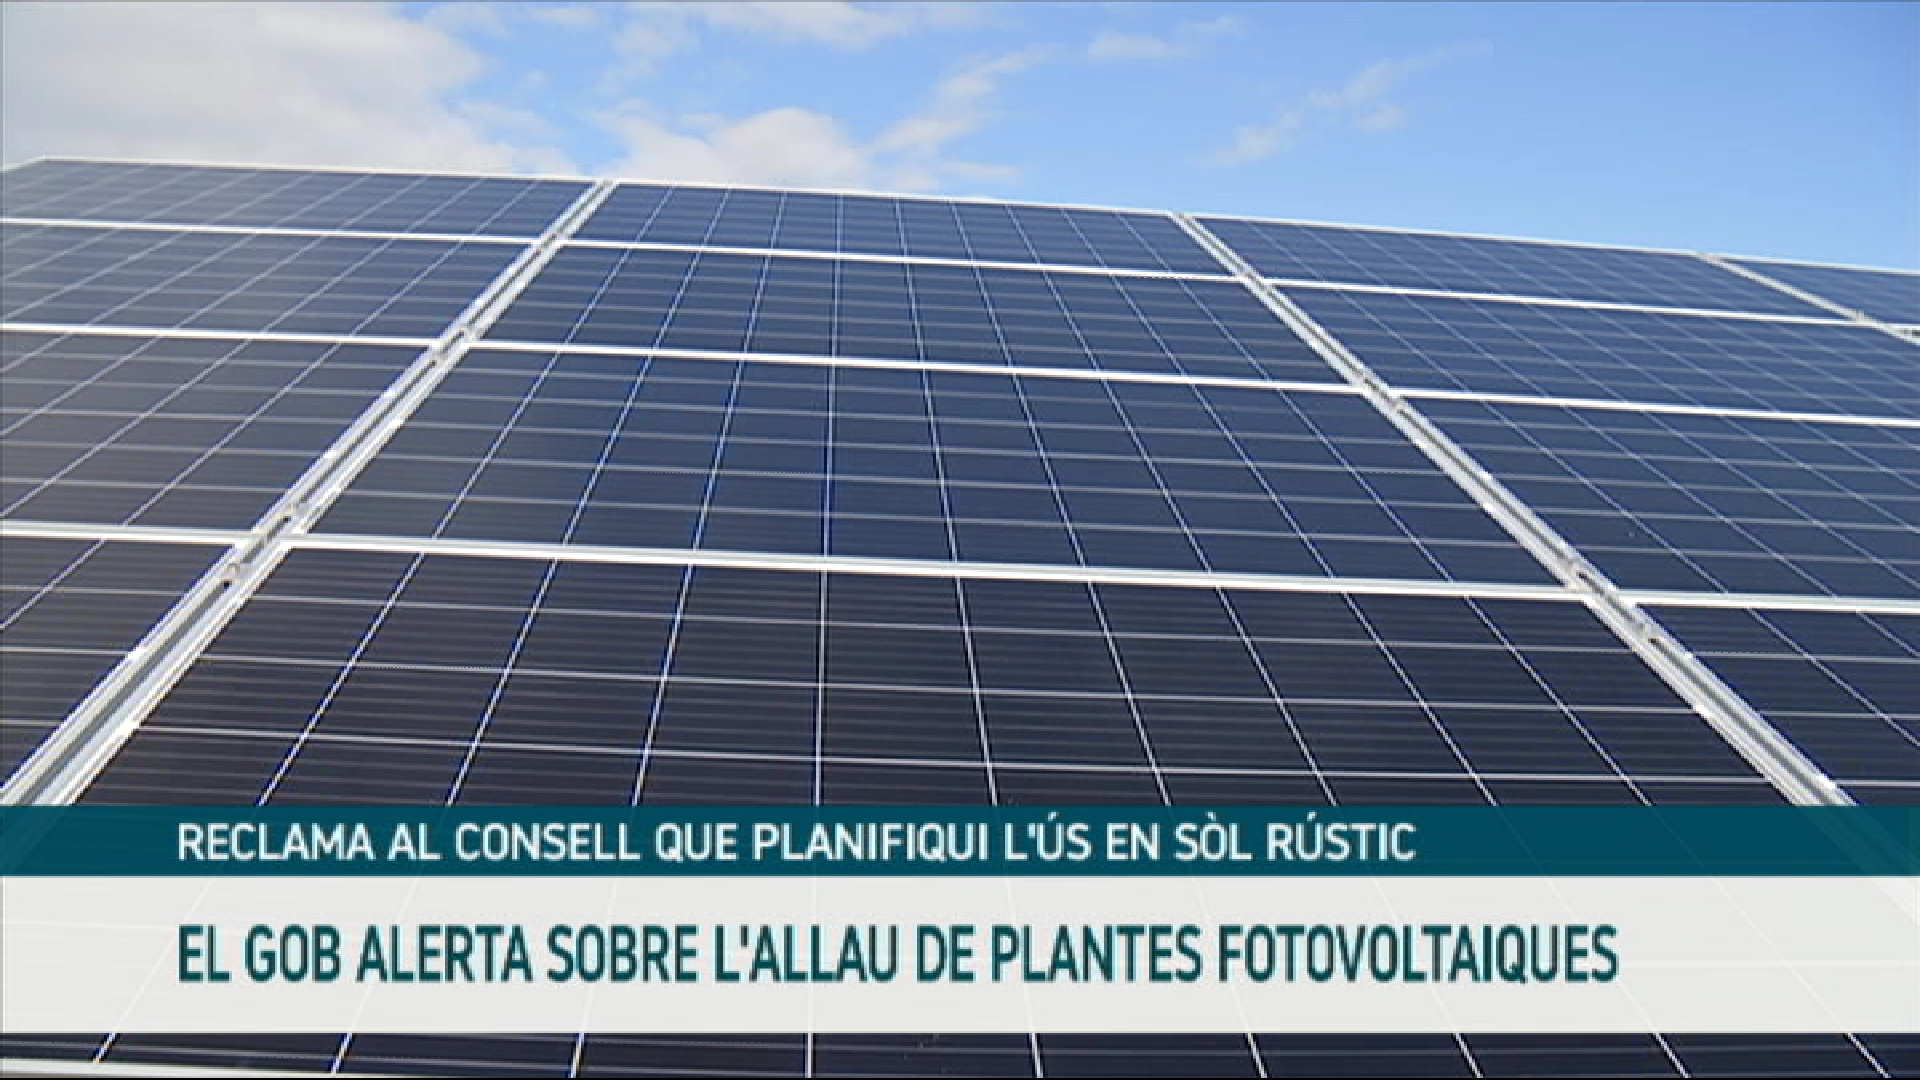 El GOB alerta sobre l’allau de plantes fotovoltaiques a Mallorca